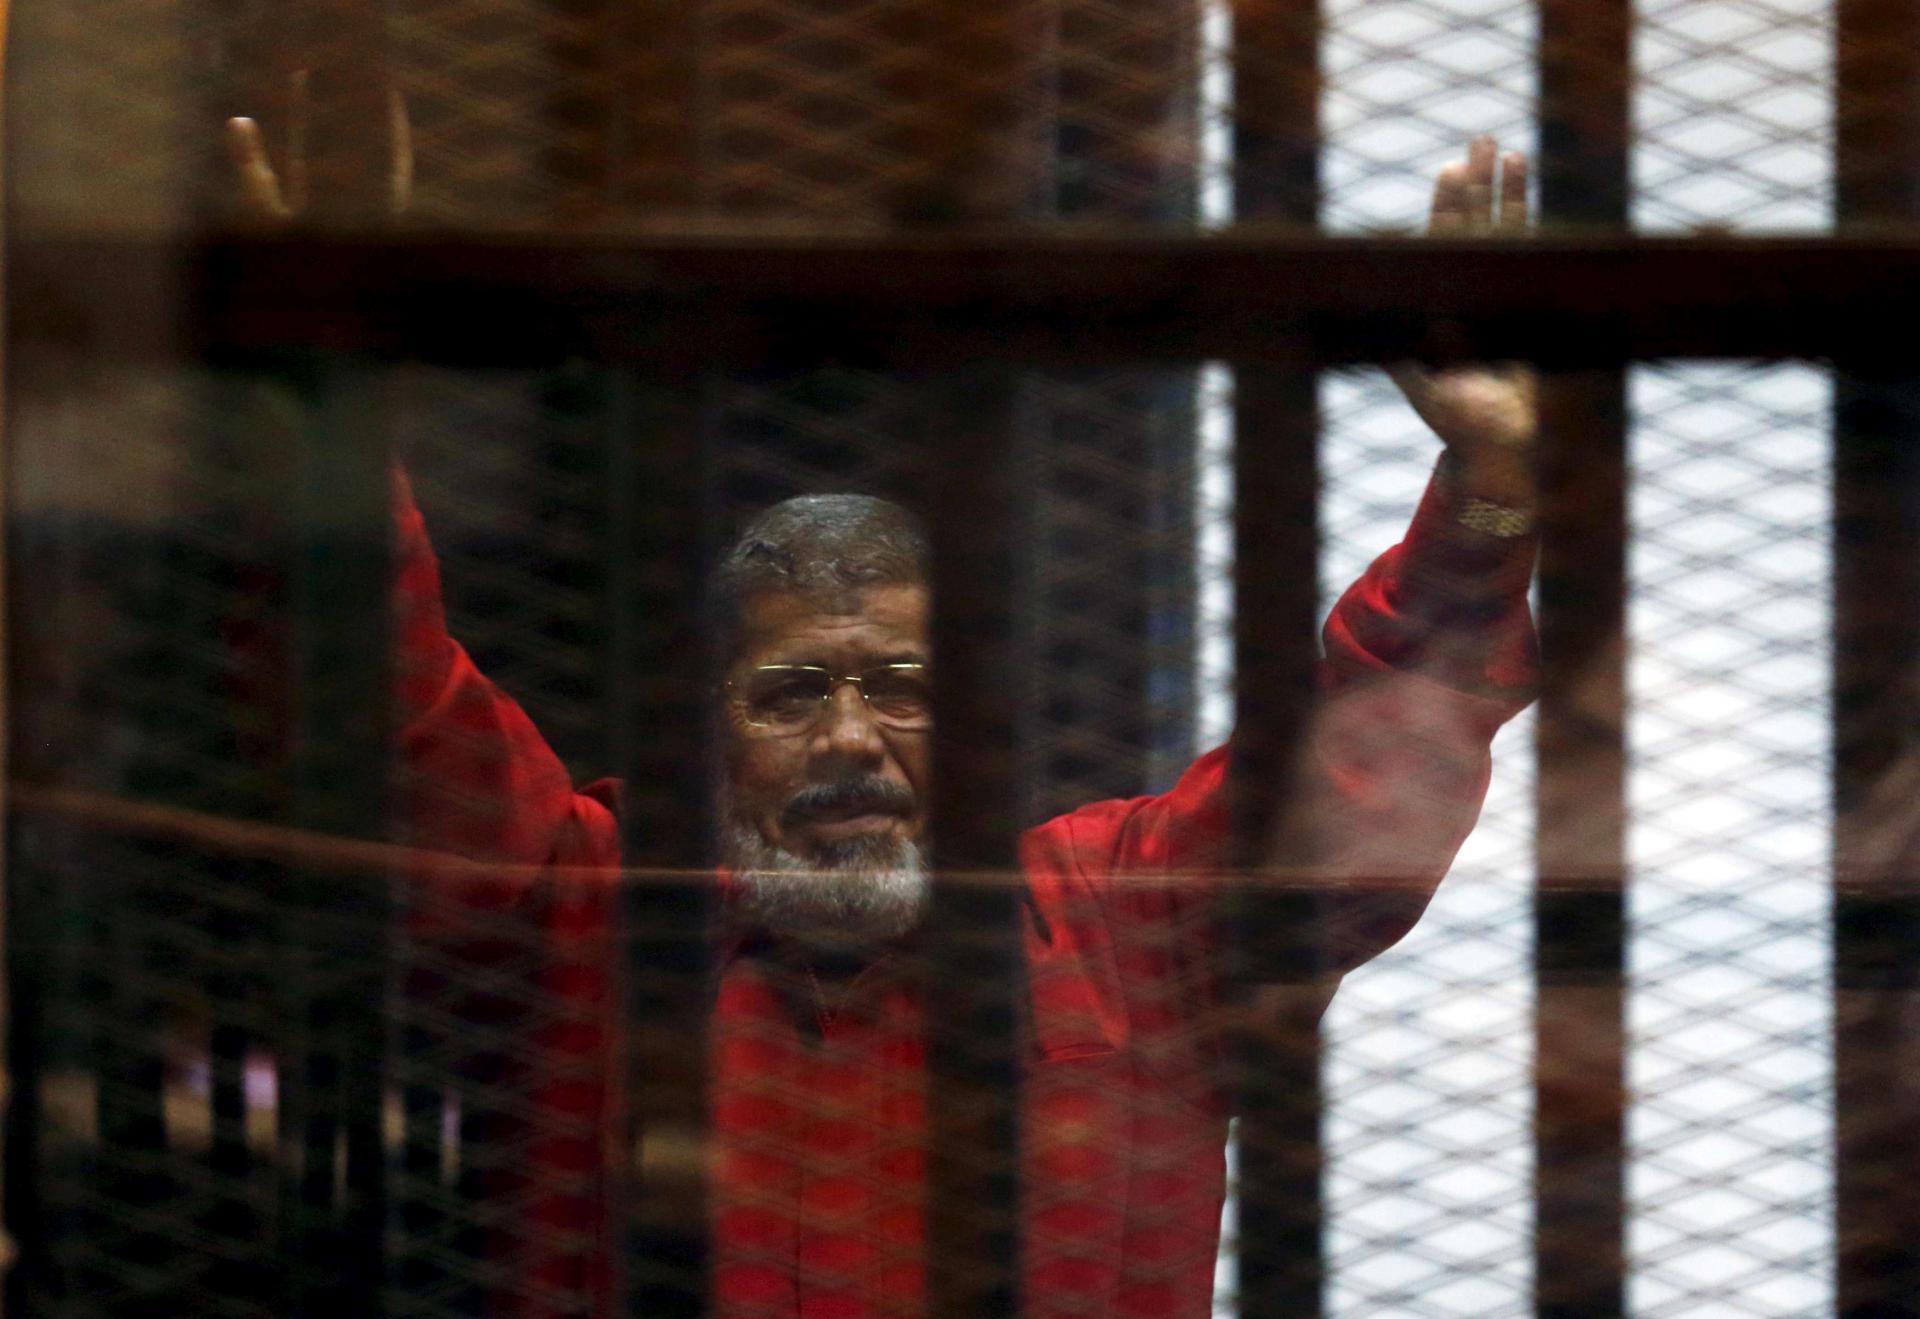 مرسي كان يتحدث الى القاضي قبل وفاته بوقت قصير